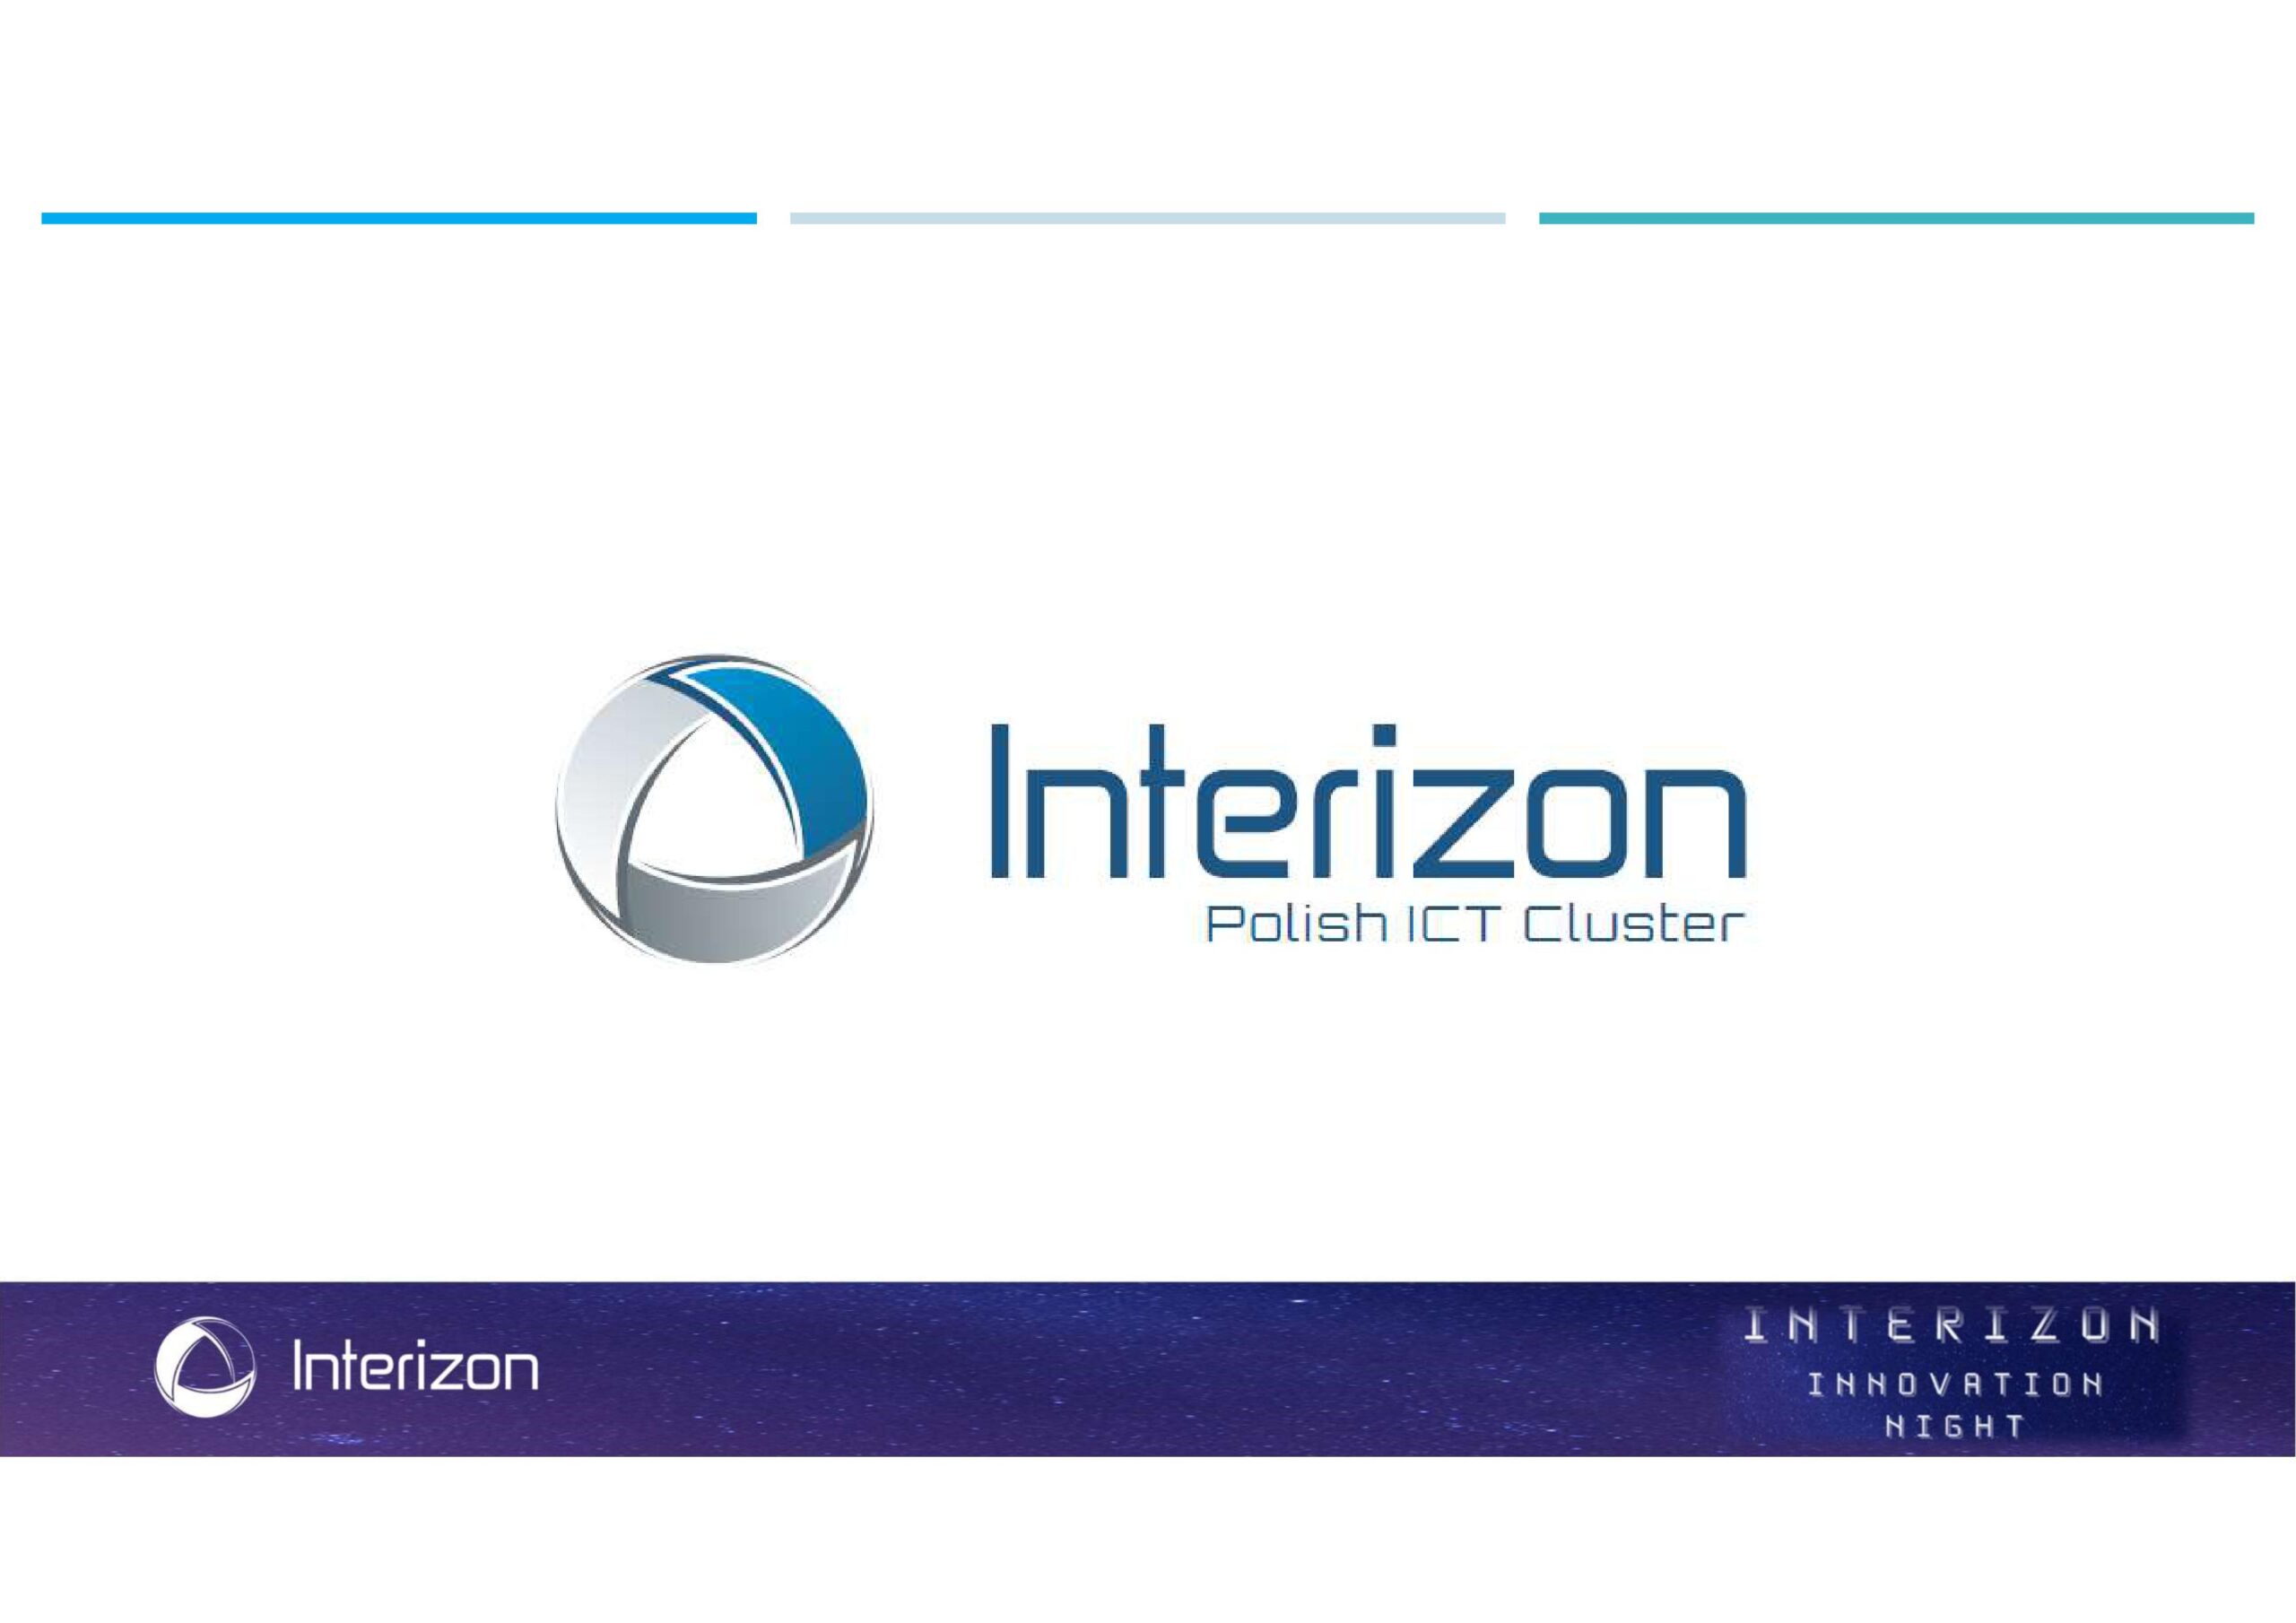 Interizon Innovation Night – spotkanie informacyjno-networkingowe członków i partnerów klastra